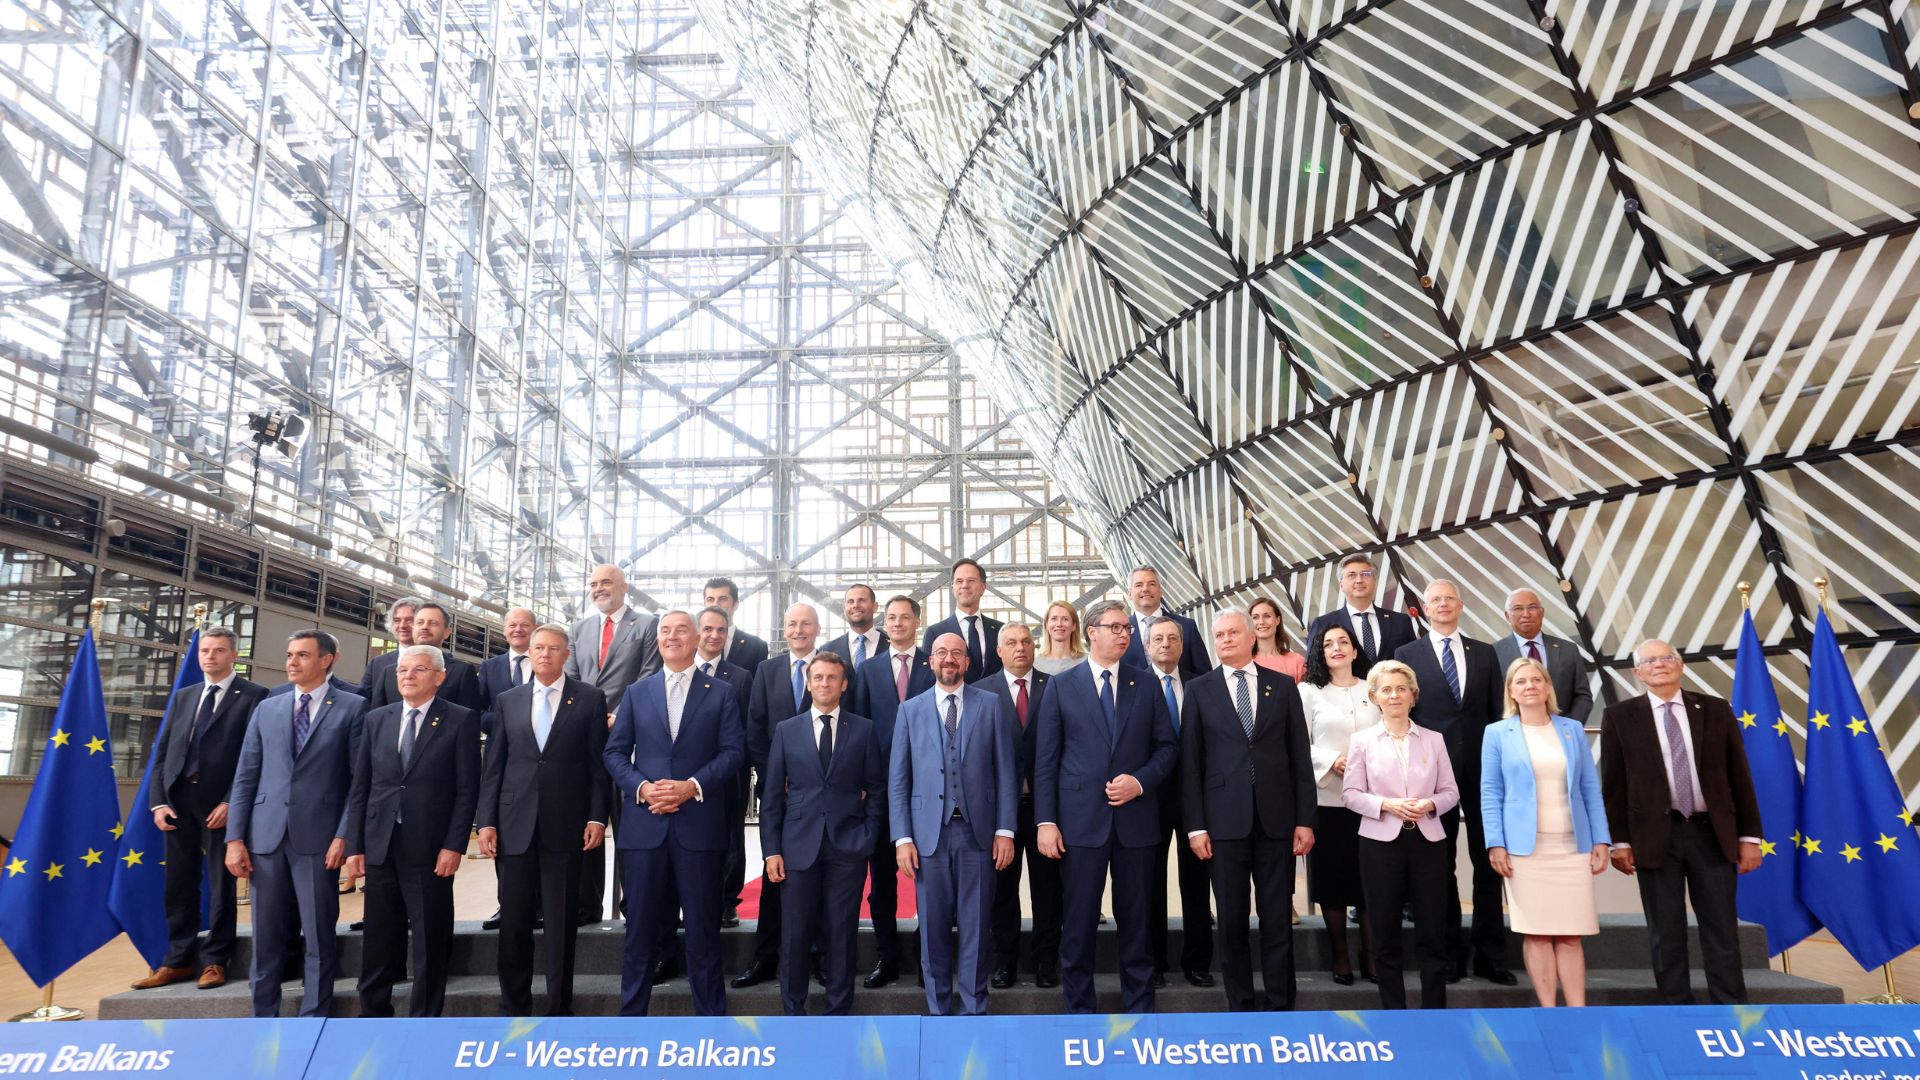 Partecipanti al vertice dei leader Ue - Balcani occidentali posano per una family photo, a Bruxelles, 23 giugno 2022.